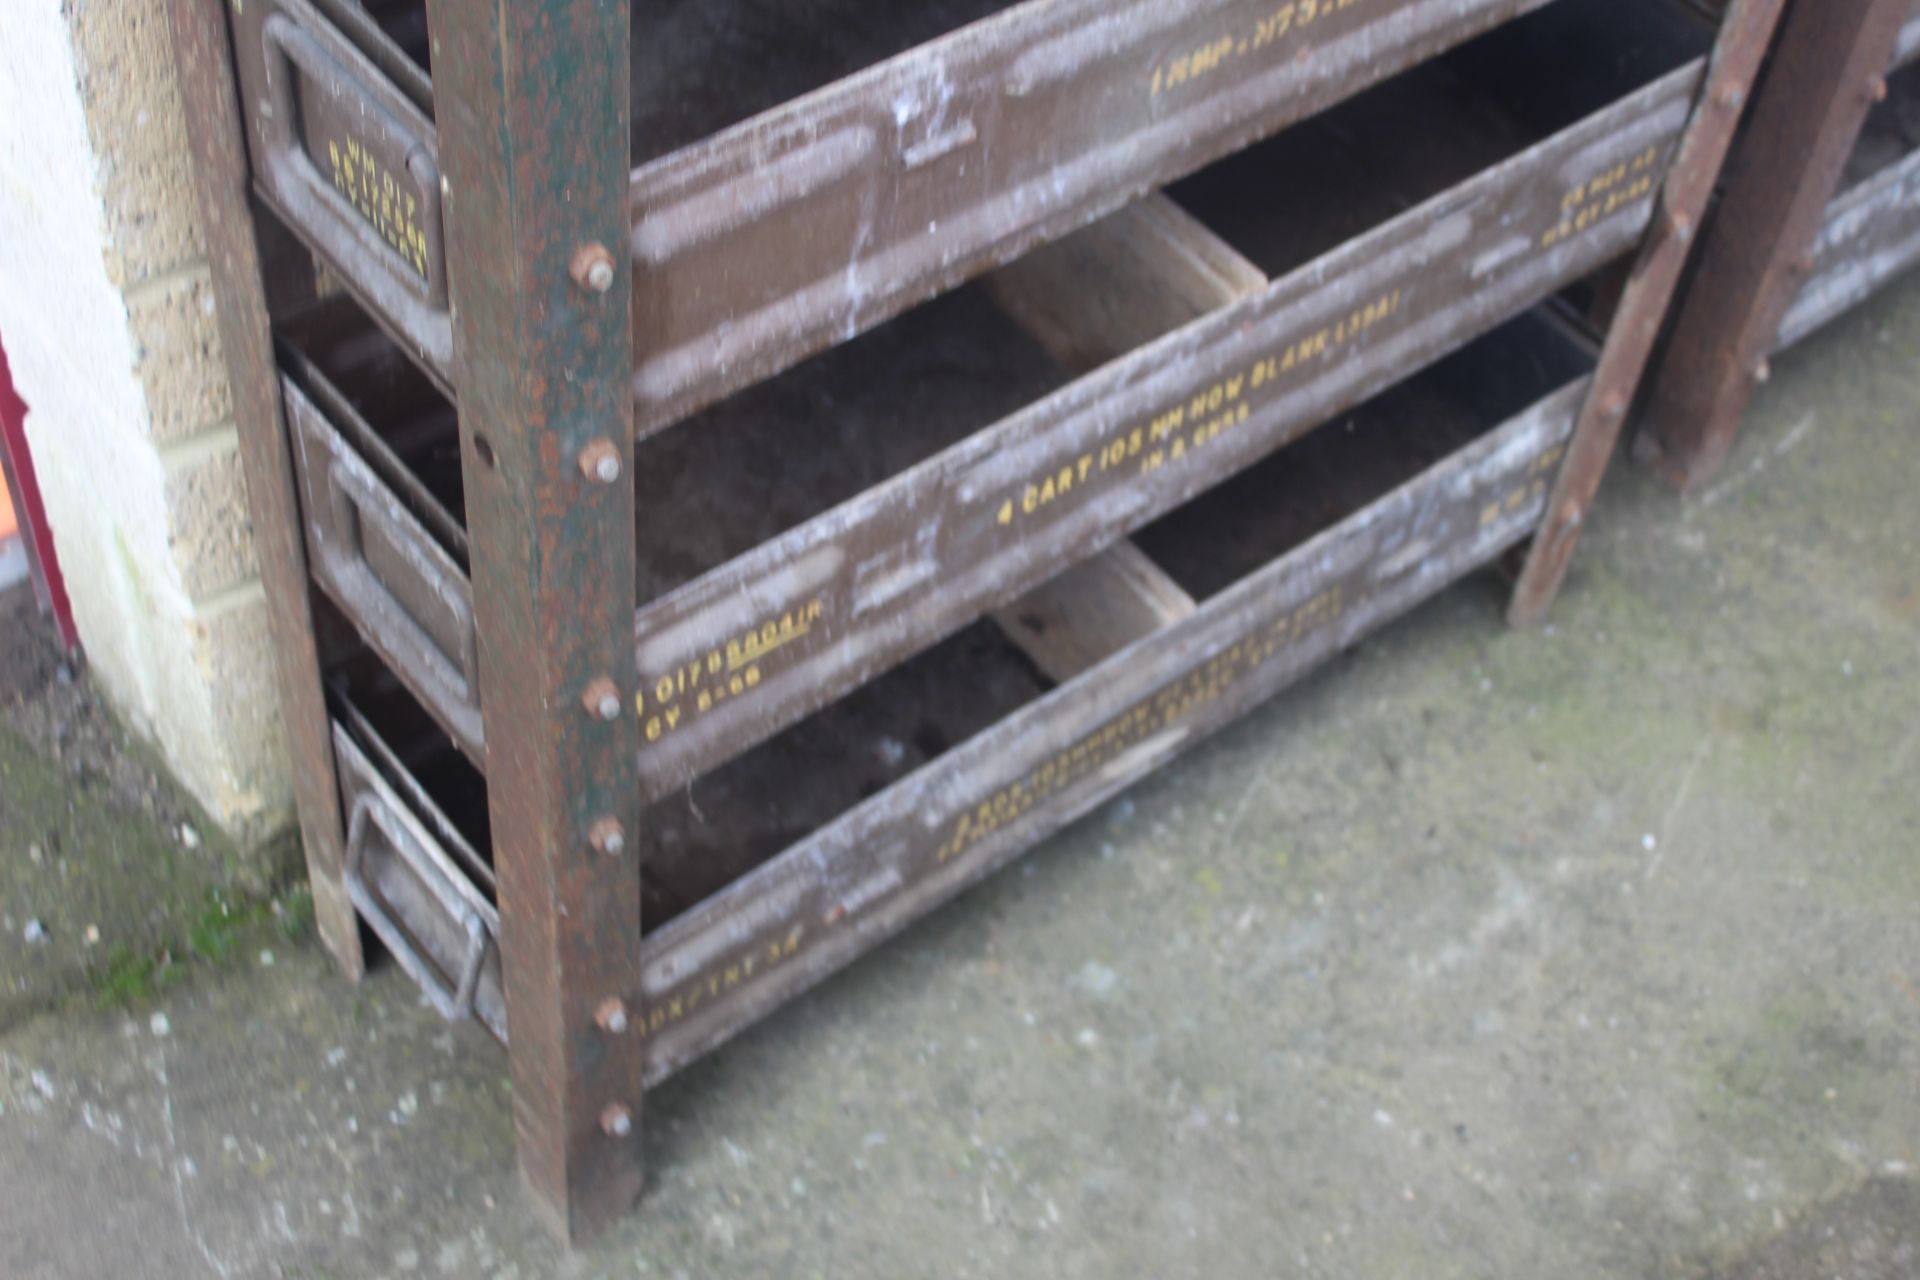 Workshop storage unit made from ammunition boxes. - Bild 3 aus 3